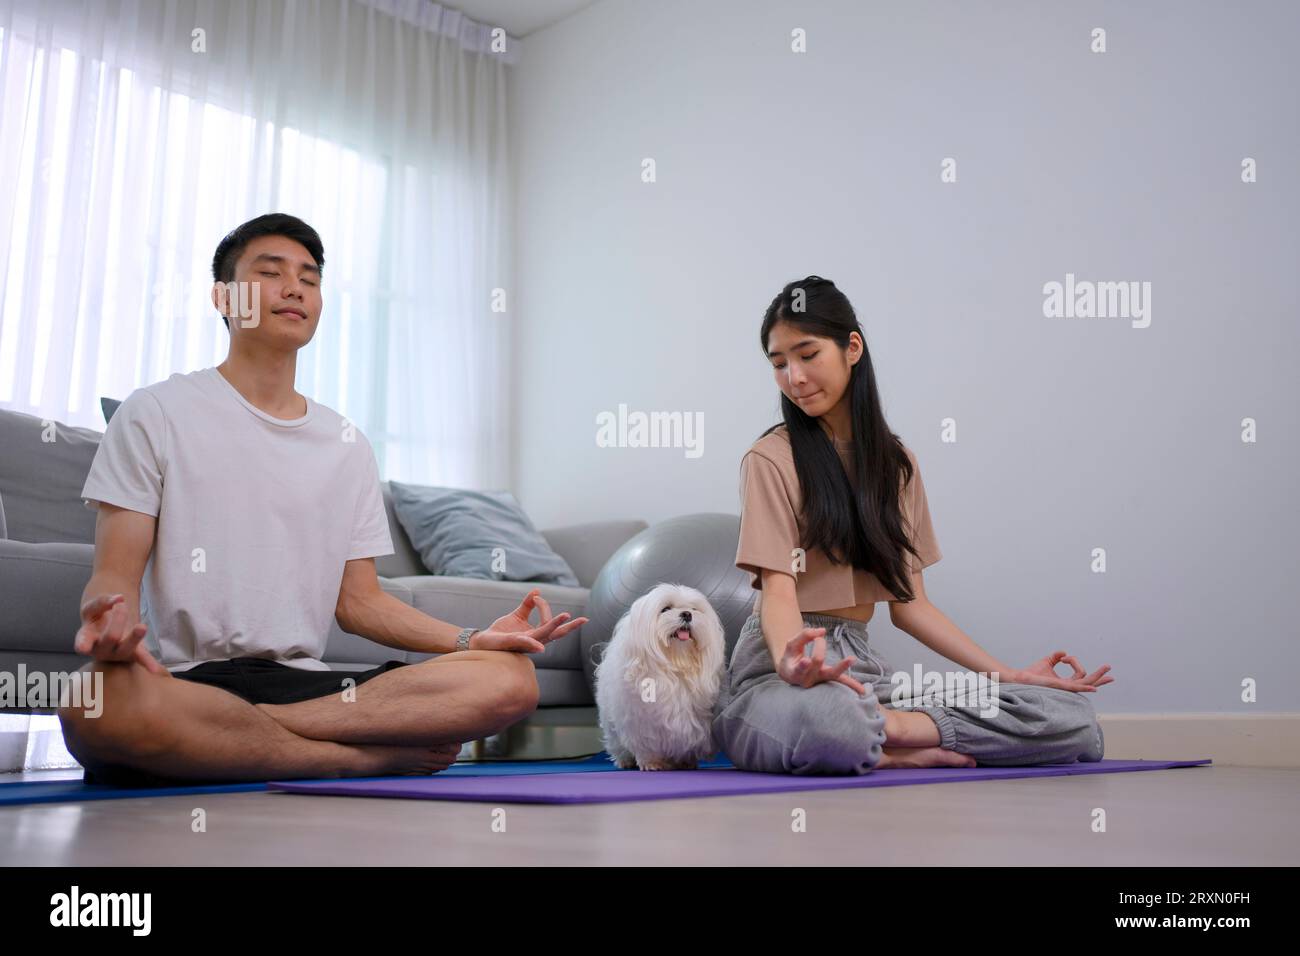 Das junge Paar spielt zu Hause Yoga. Lifestyle- und Freizeitkonzept. Stockfoto